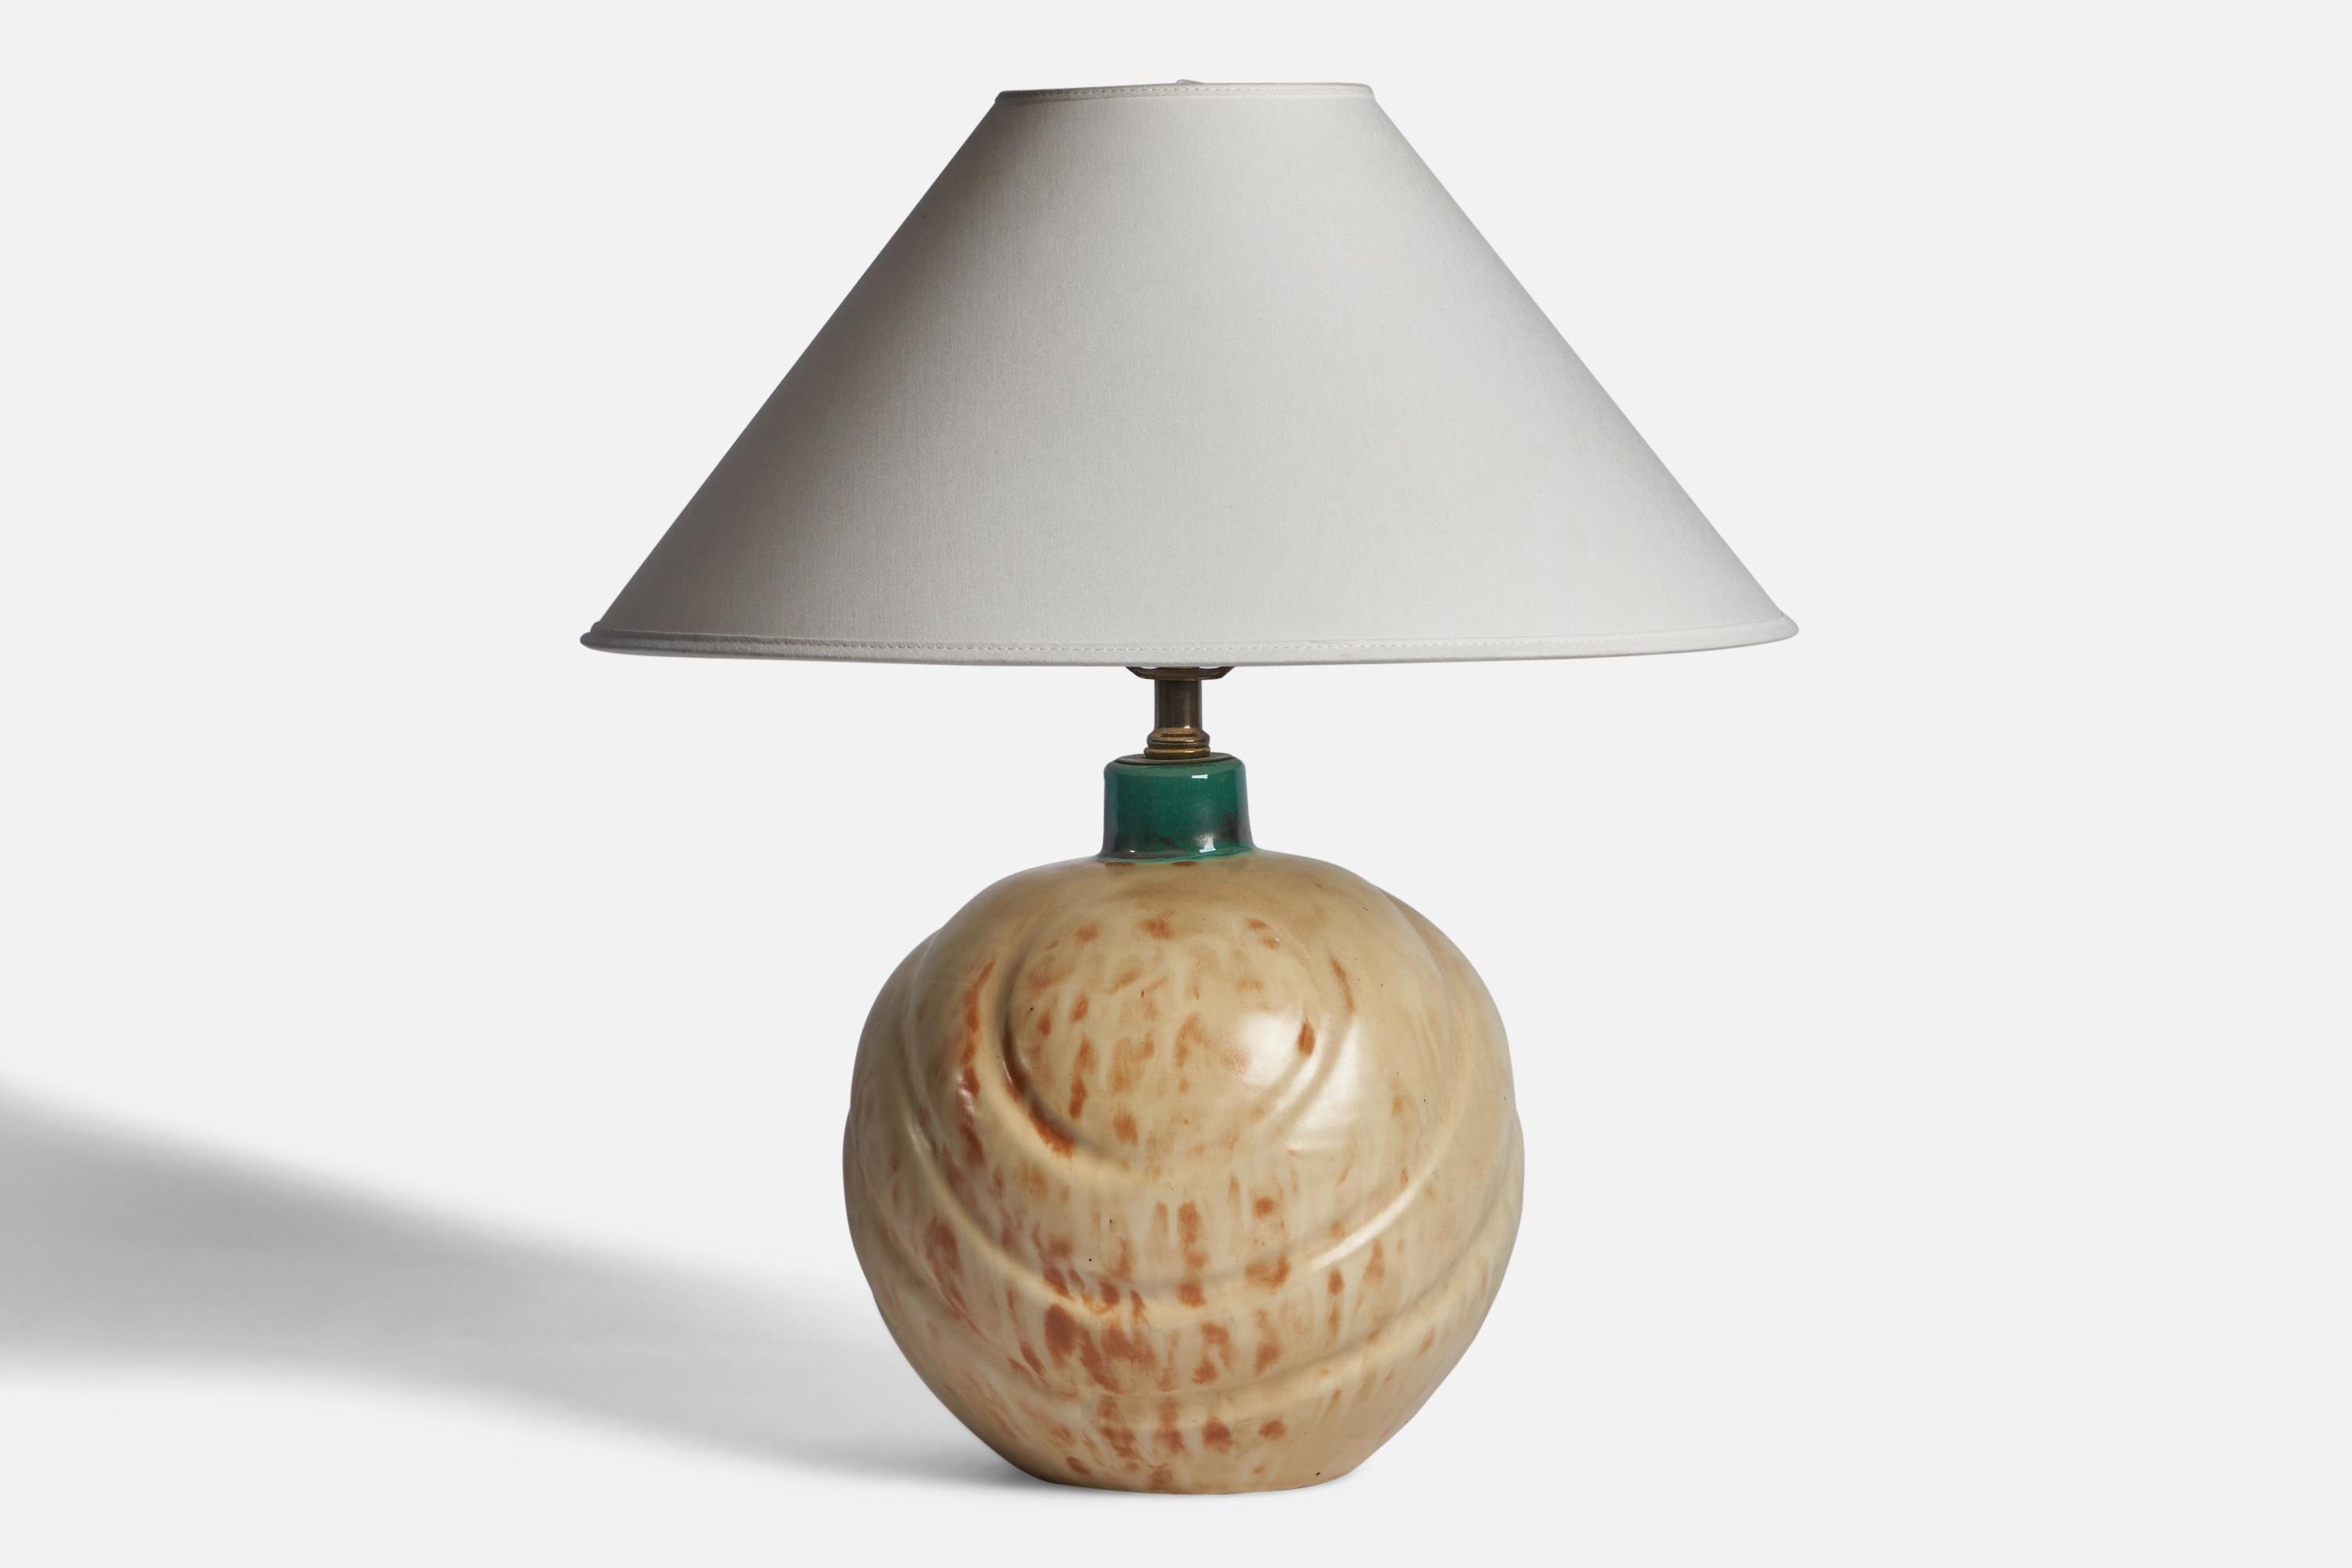 Lampe de table en faïence verte et beige, conçue et produite par Upsala Ekeby, Suède, années 1930.

Dimensions de la lampe (pouces) : 13.25